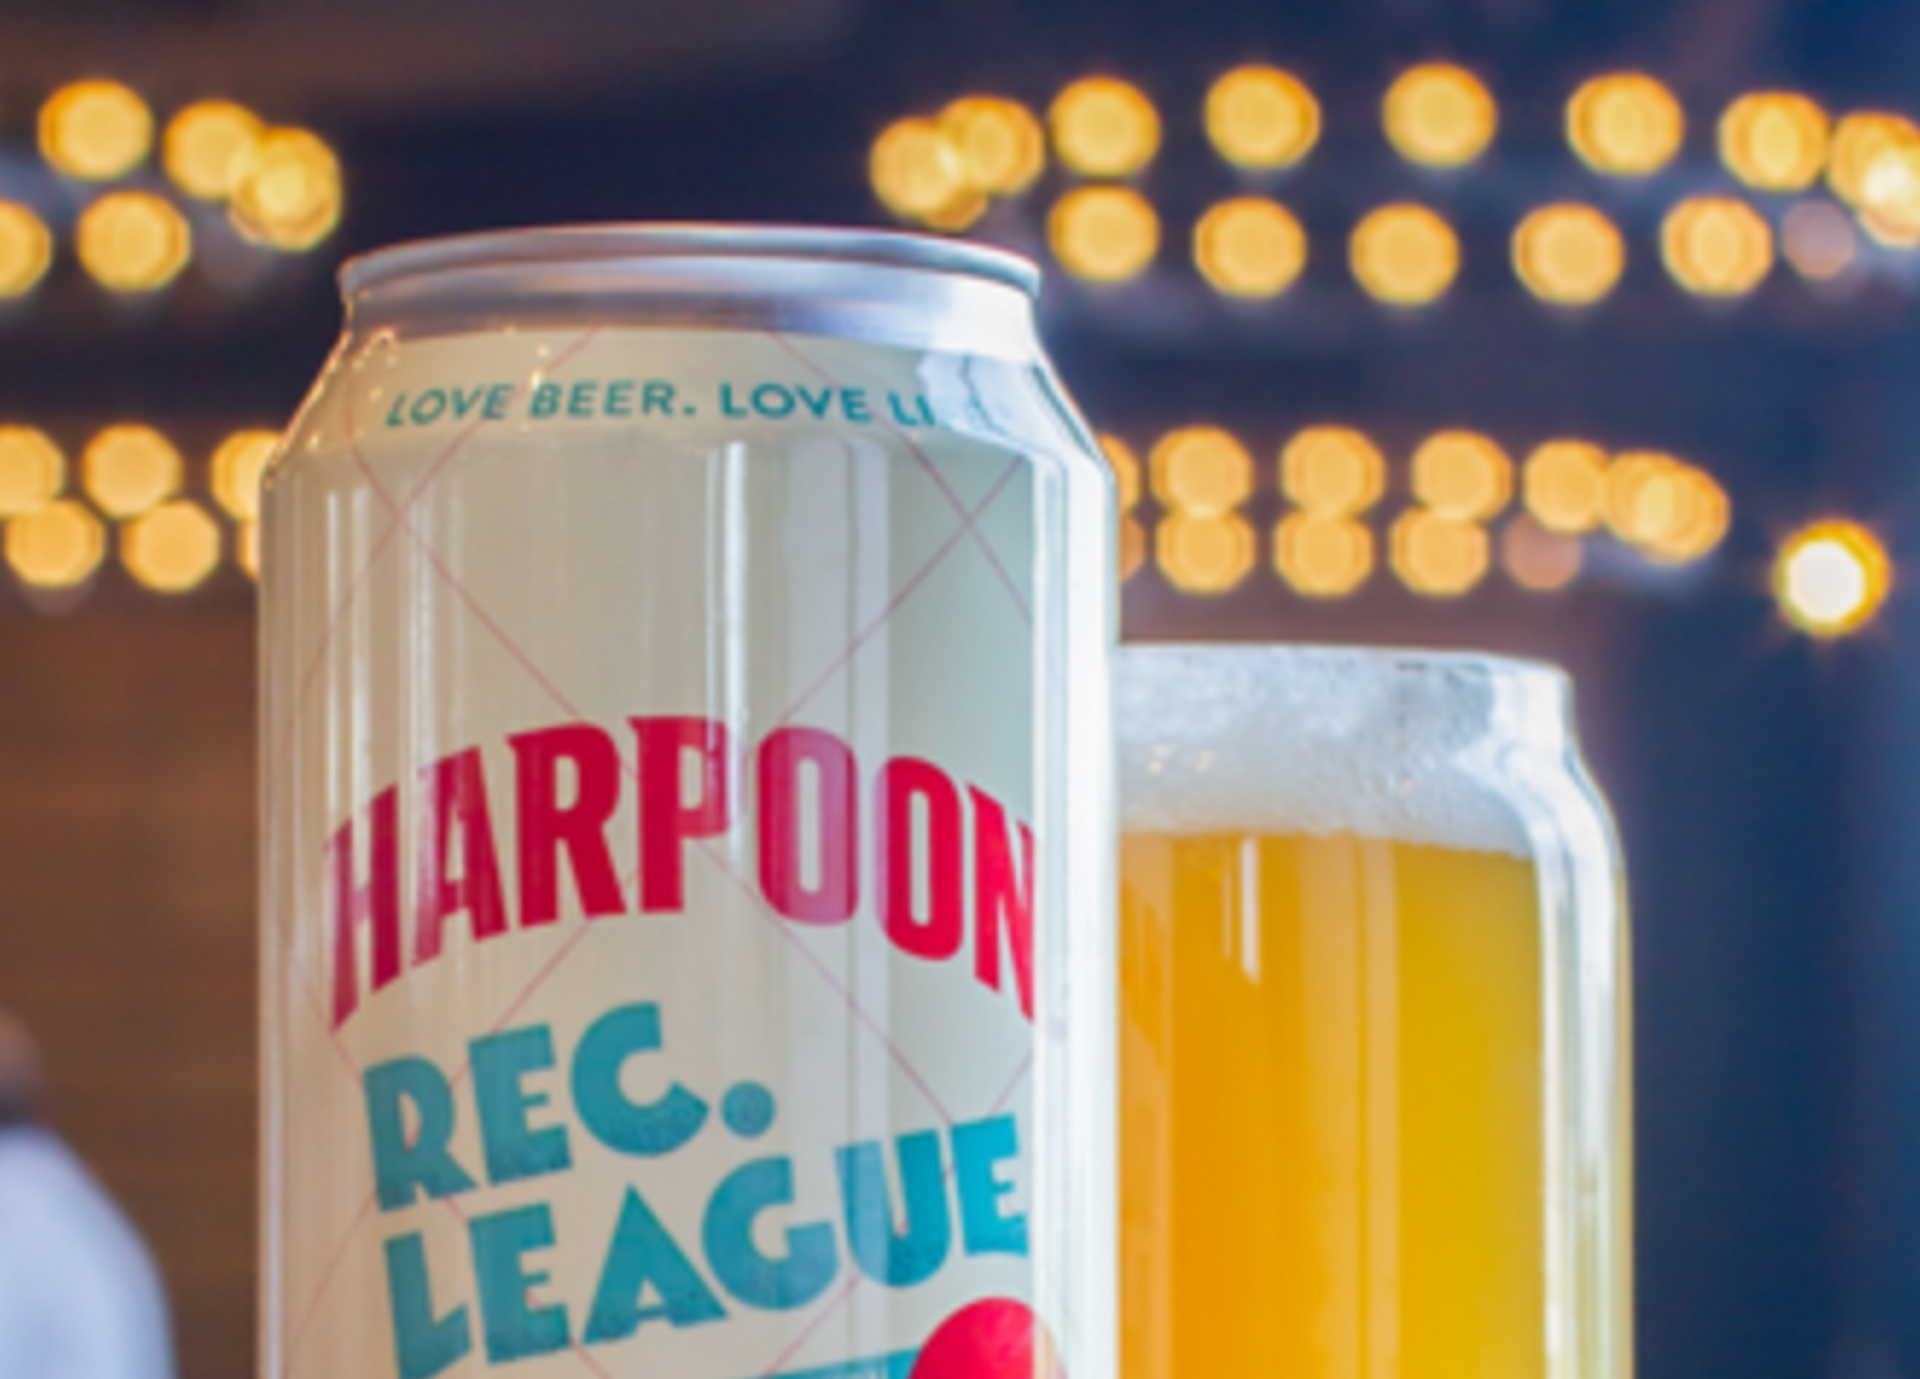 Bier Harpoon Rec. League